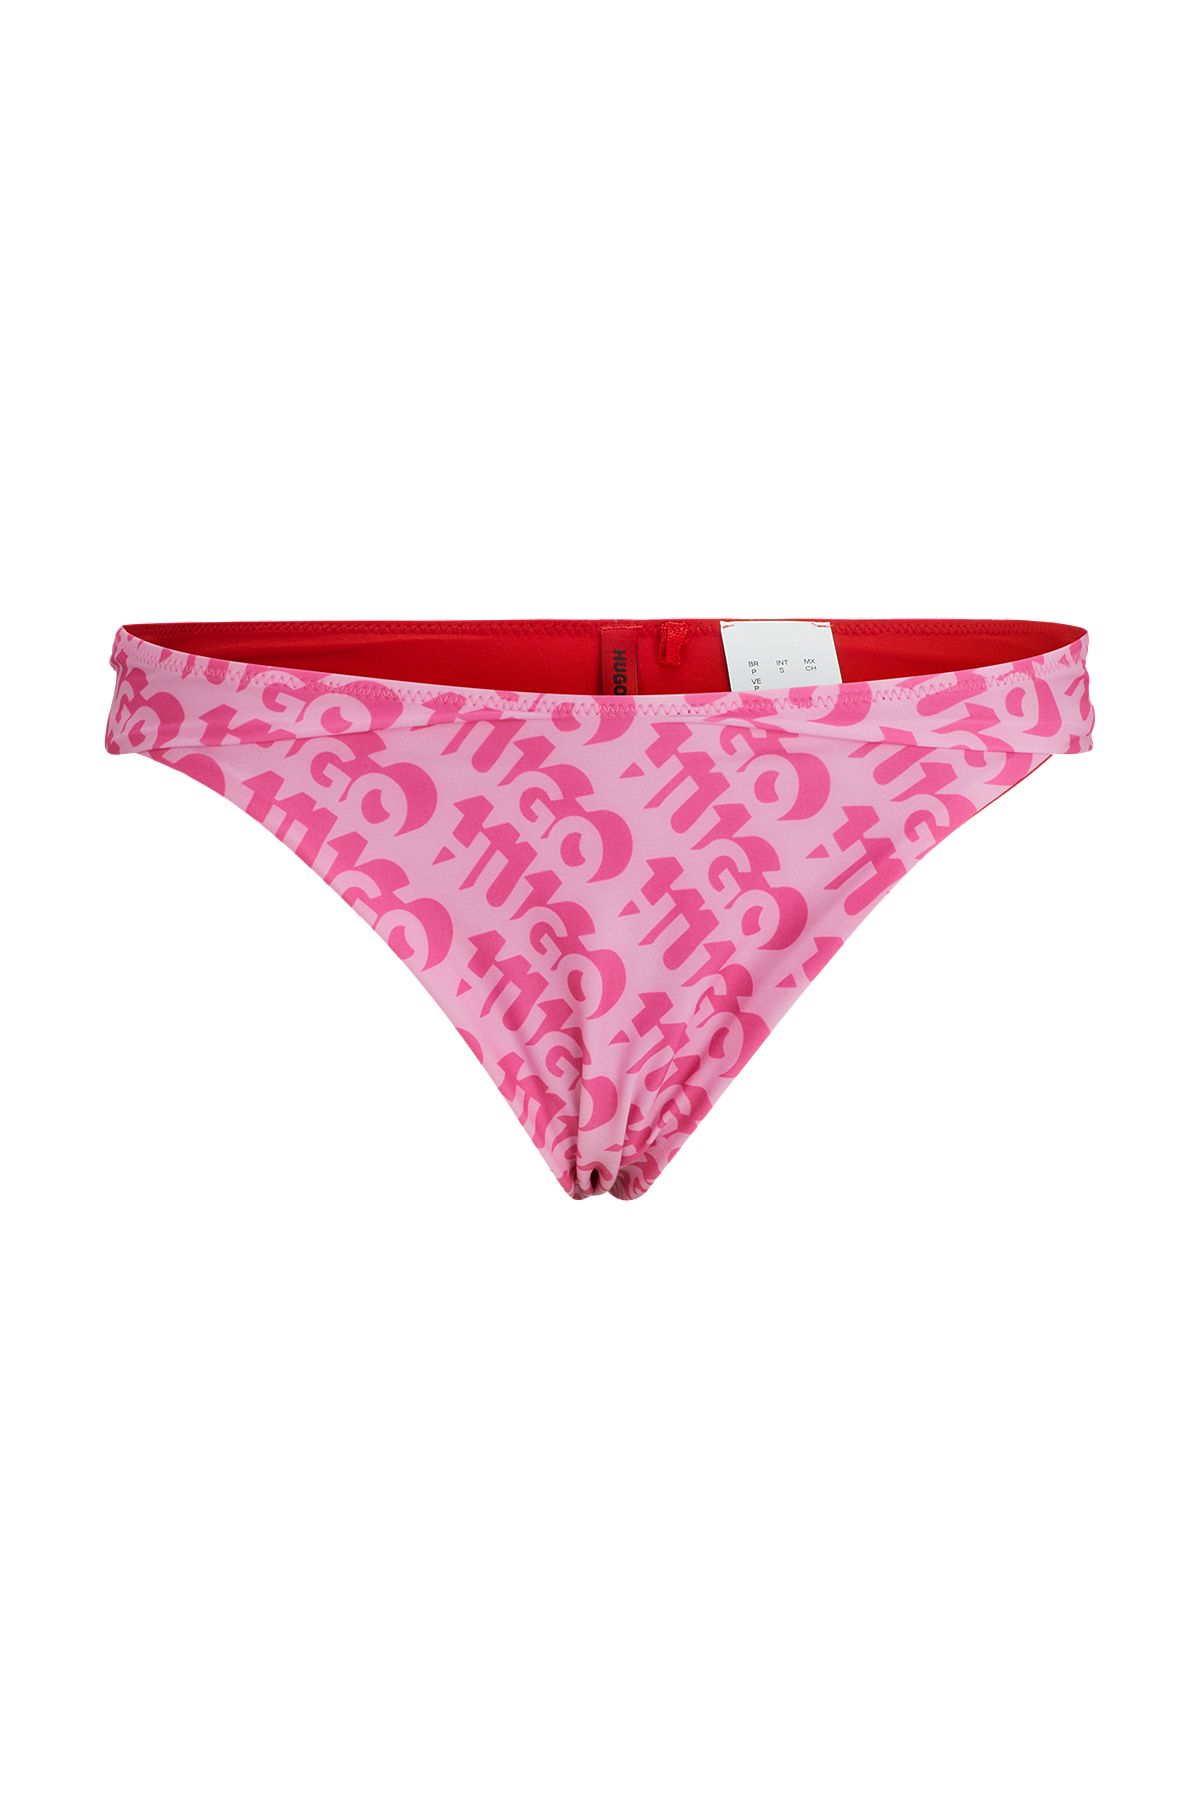 Brazilian bikini bottoms with repeat logo print, Pink Patterned